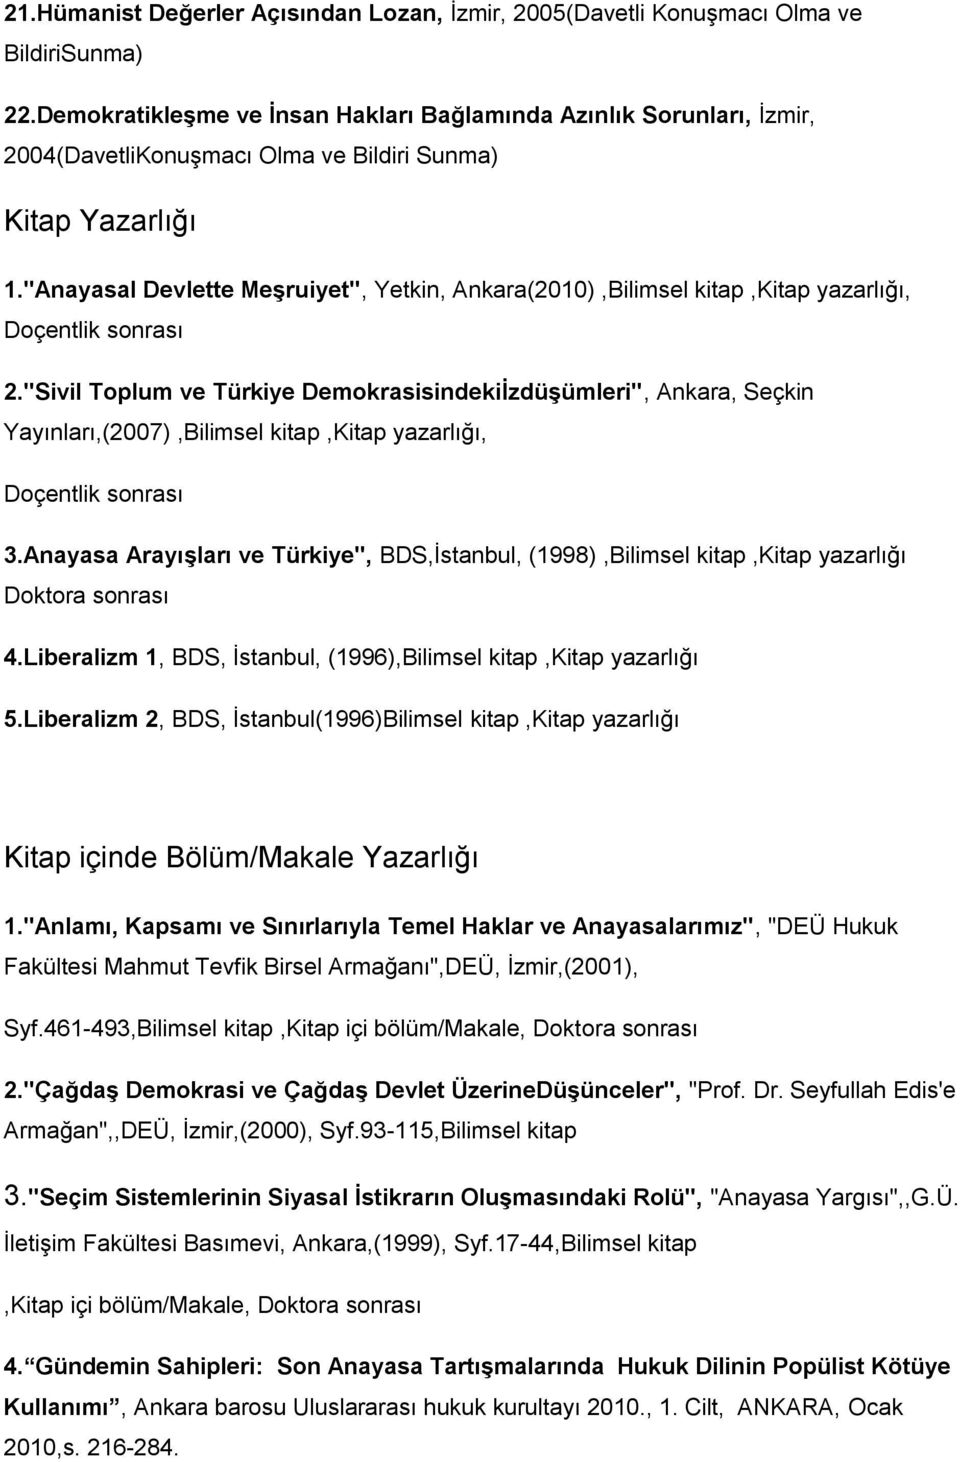 "Anayasal Devlette Meşruiyet", Yetkin, Ankara(2010),Bilimsel kitap,kitap yazarlığı, 2.